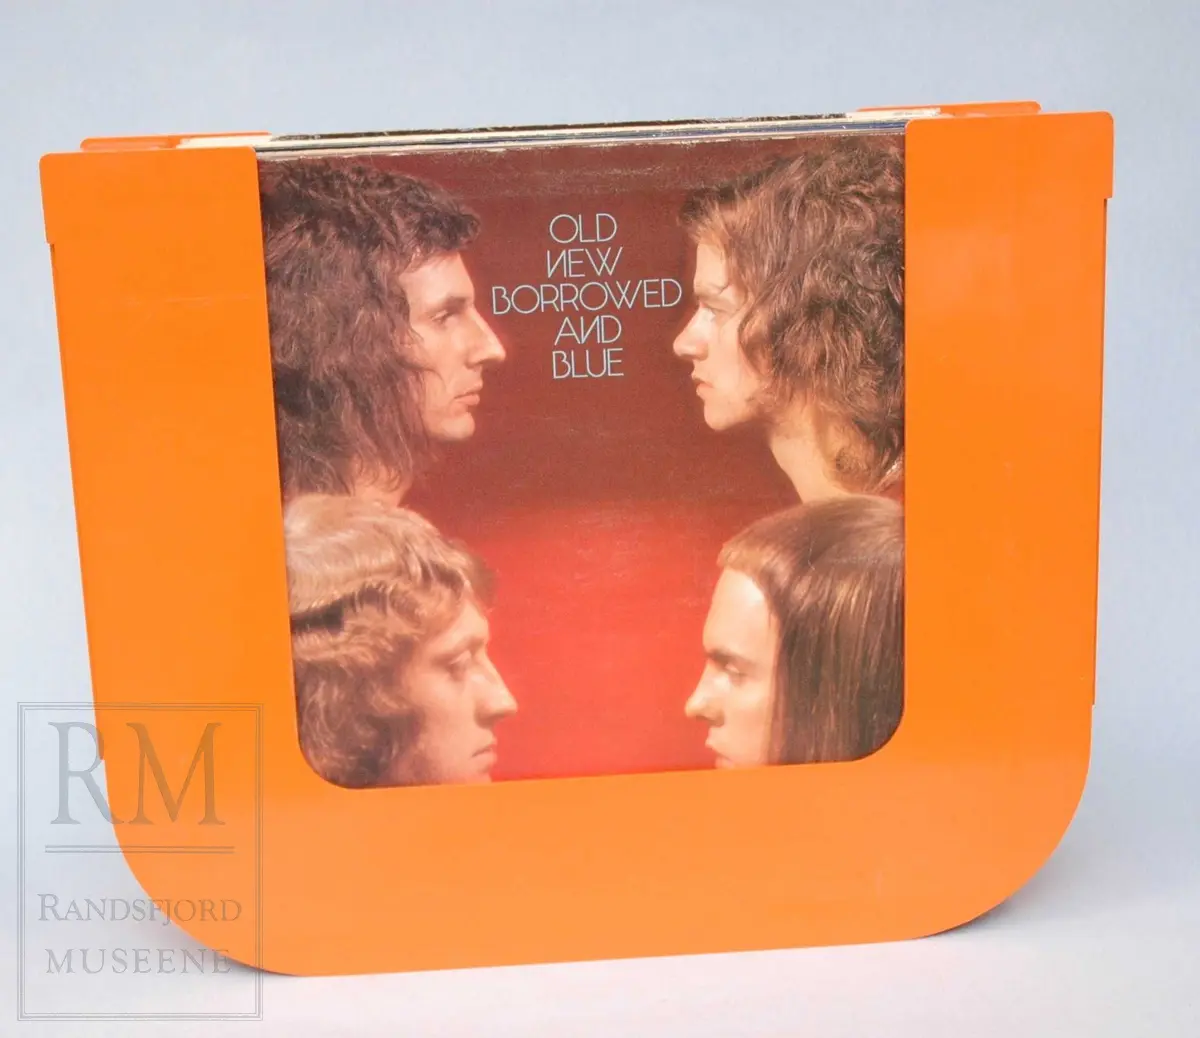 Platestativ i orange plast med plass til ca 20 LP-plater. Medfølger 17 plater.